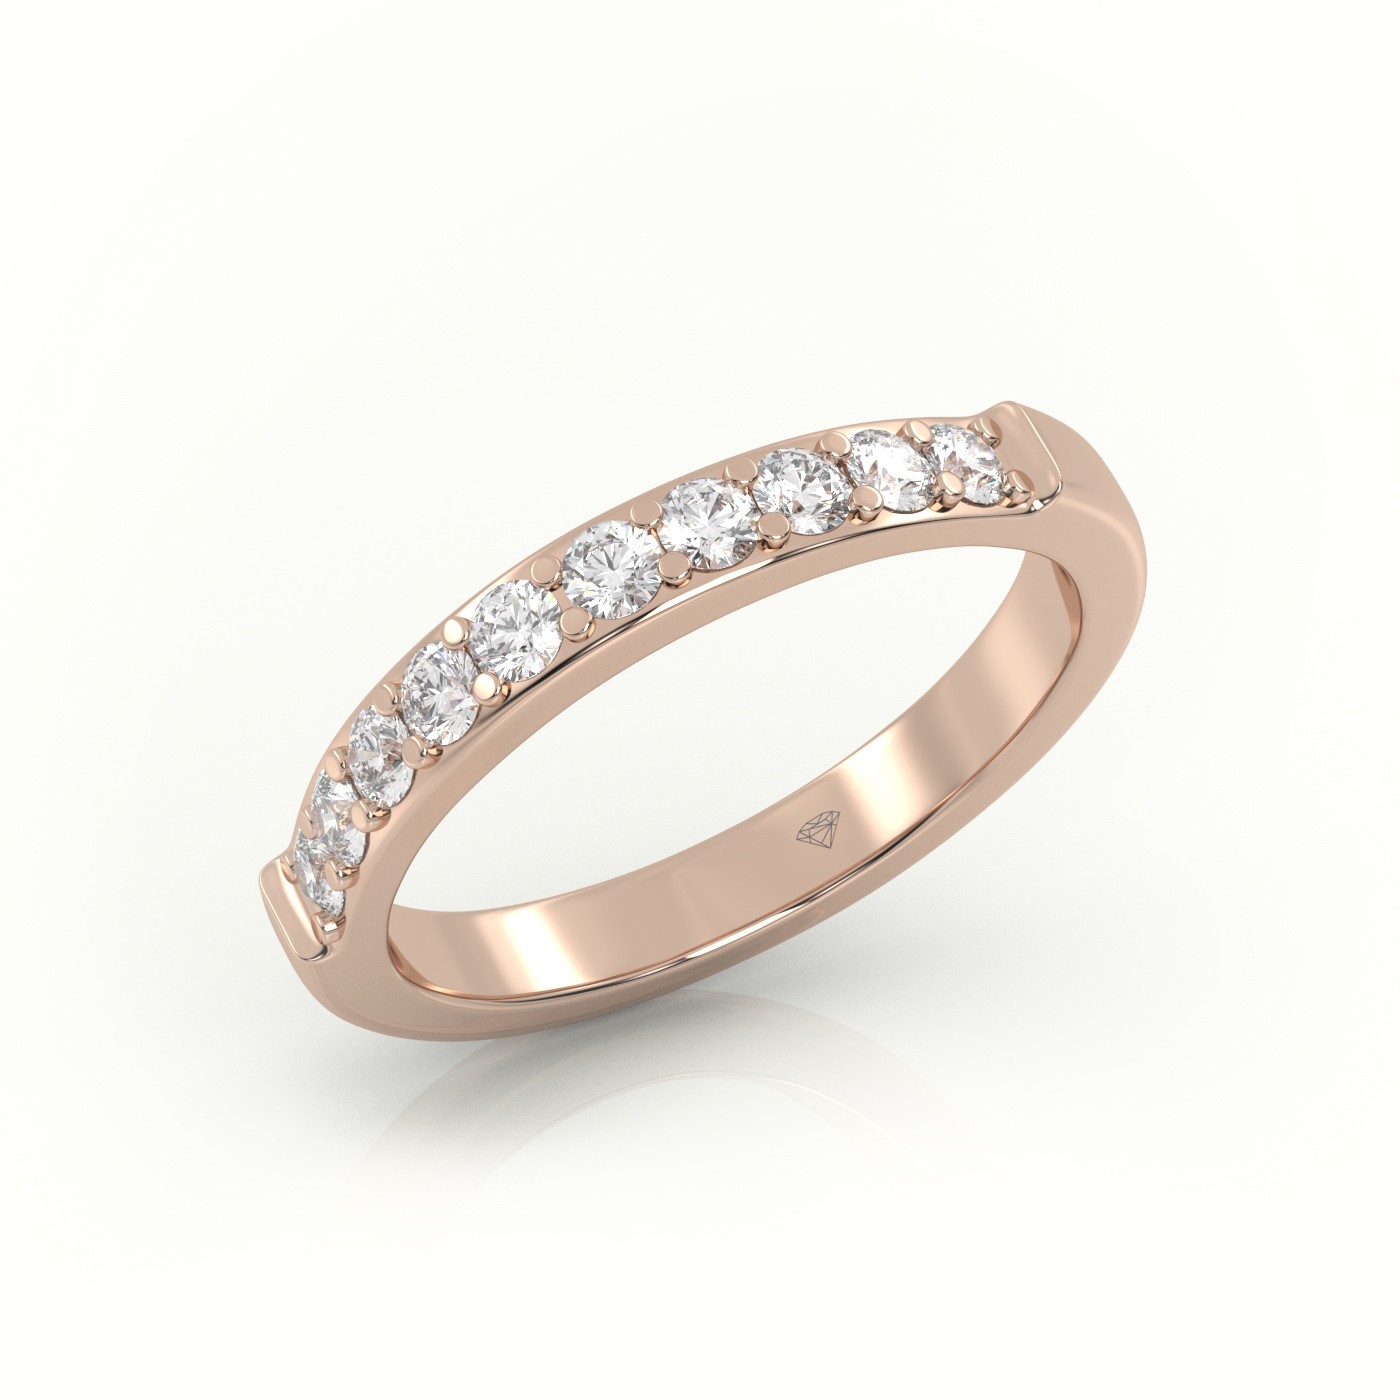 18k rose gold  round diamonds shared prongs half eternity wedding band Photos & images